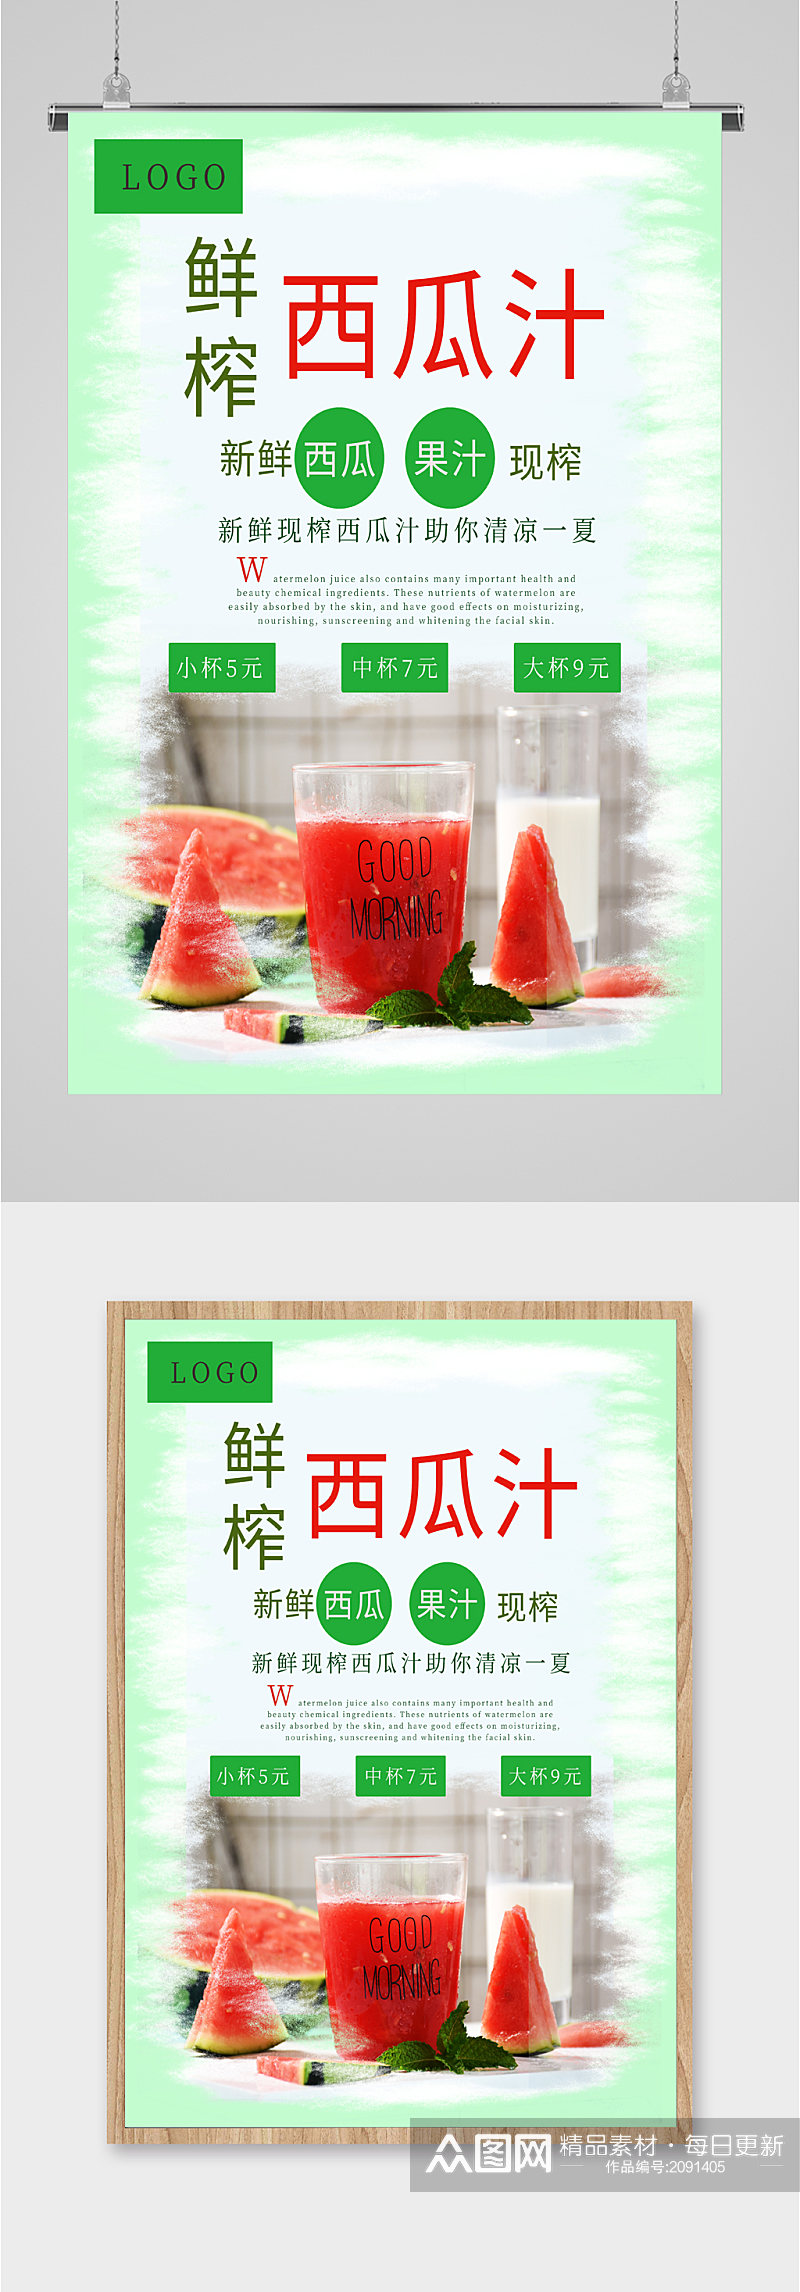 鲜榨西瓜汁饮品海报素材